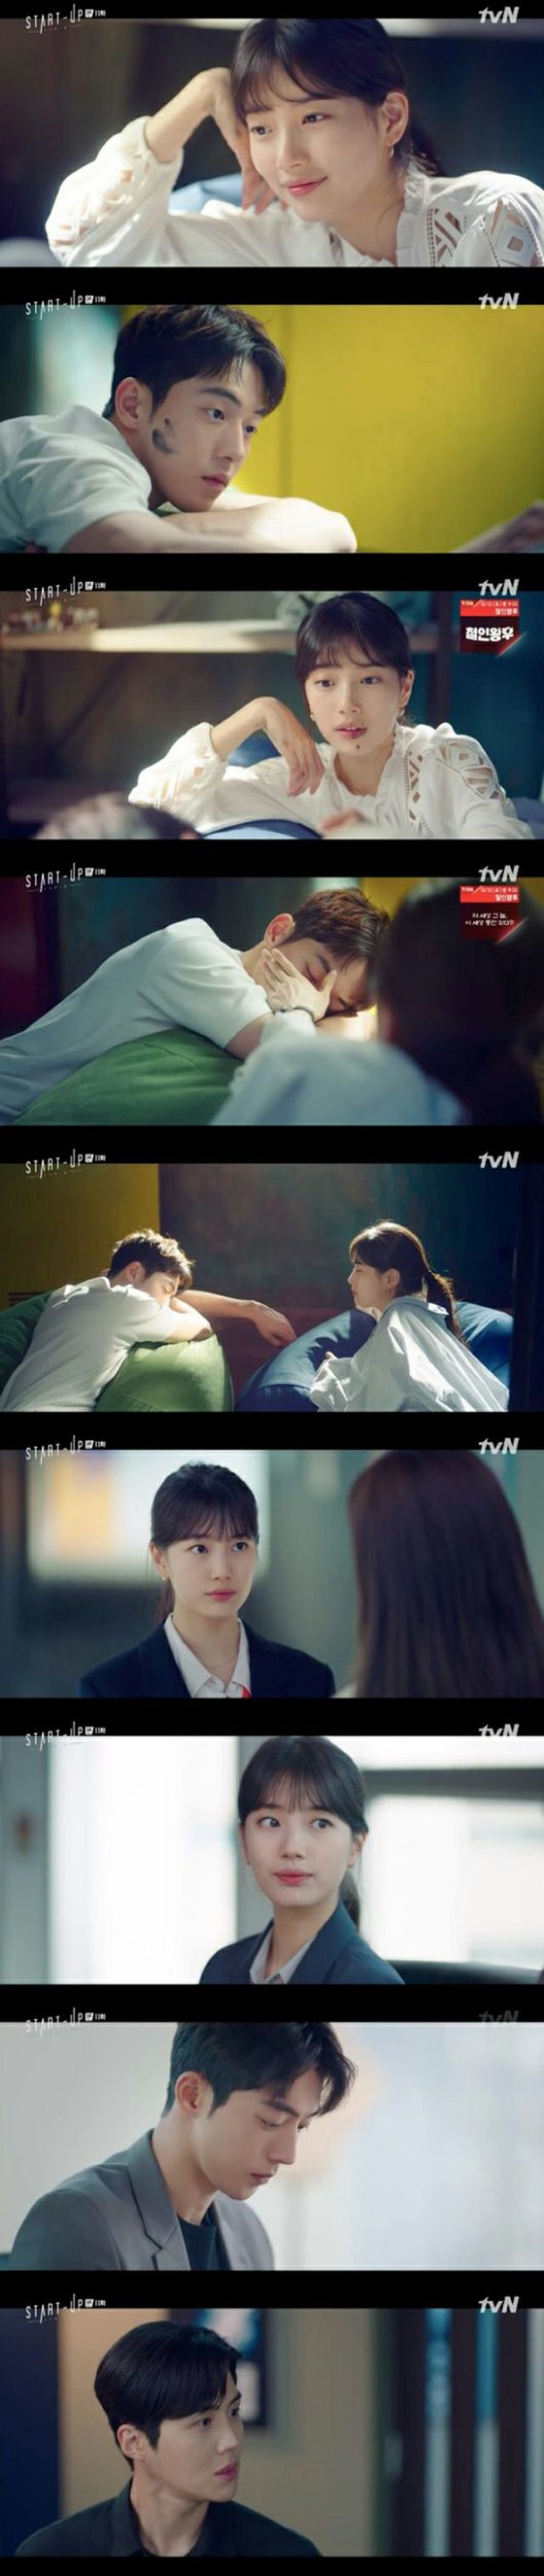 ≪ Phim truyền hình Hàn Quốc NOW≫ "Startup" EP11, trái tim Suzy hướng về Nam Ju Hyuk ... Mưu kế của Cho Tae-gwan đe dọa